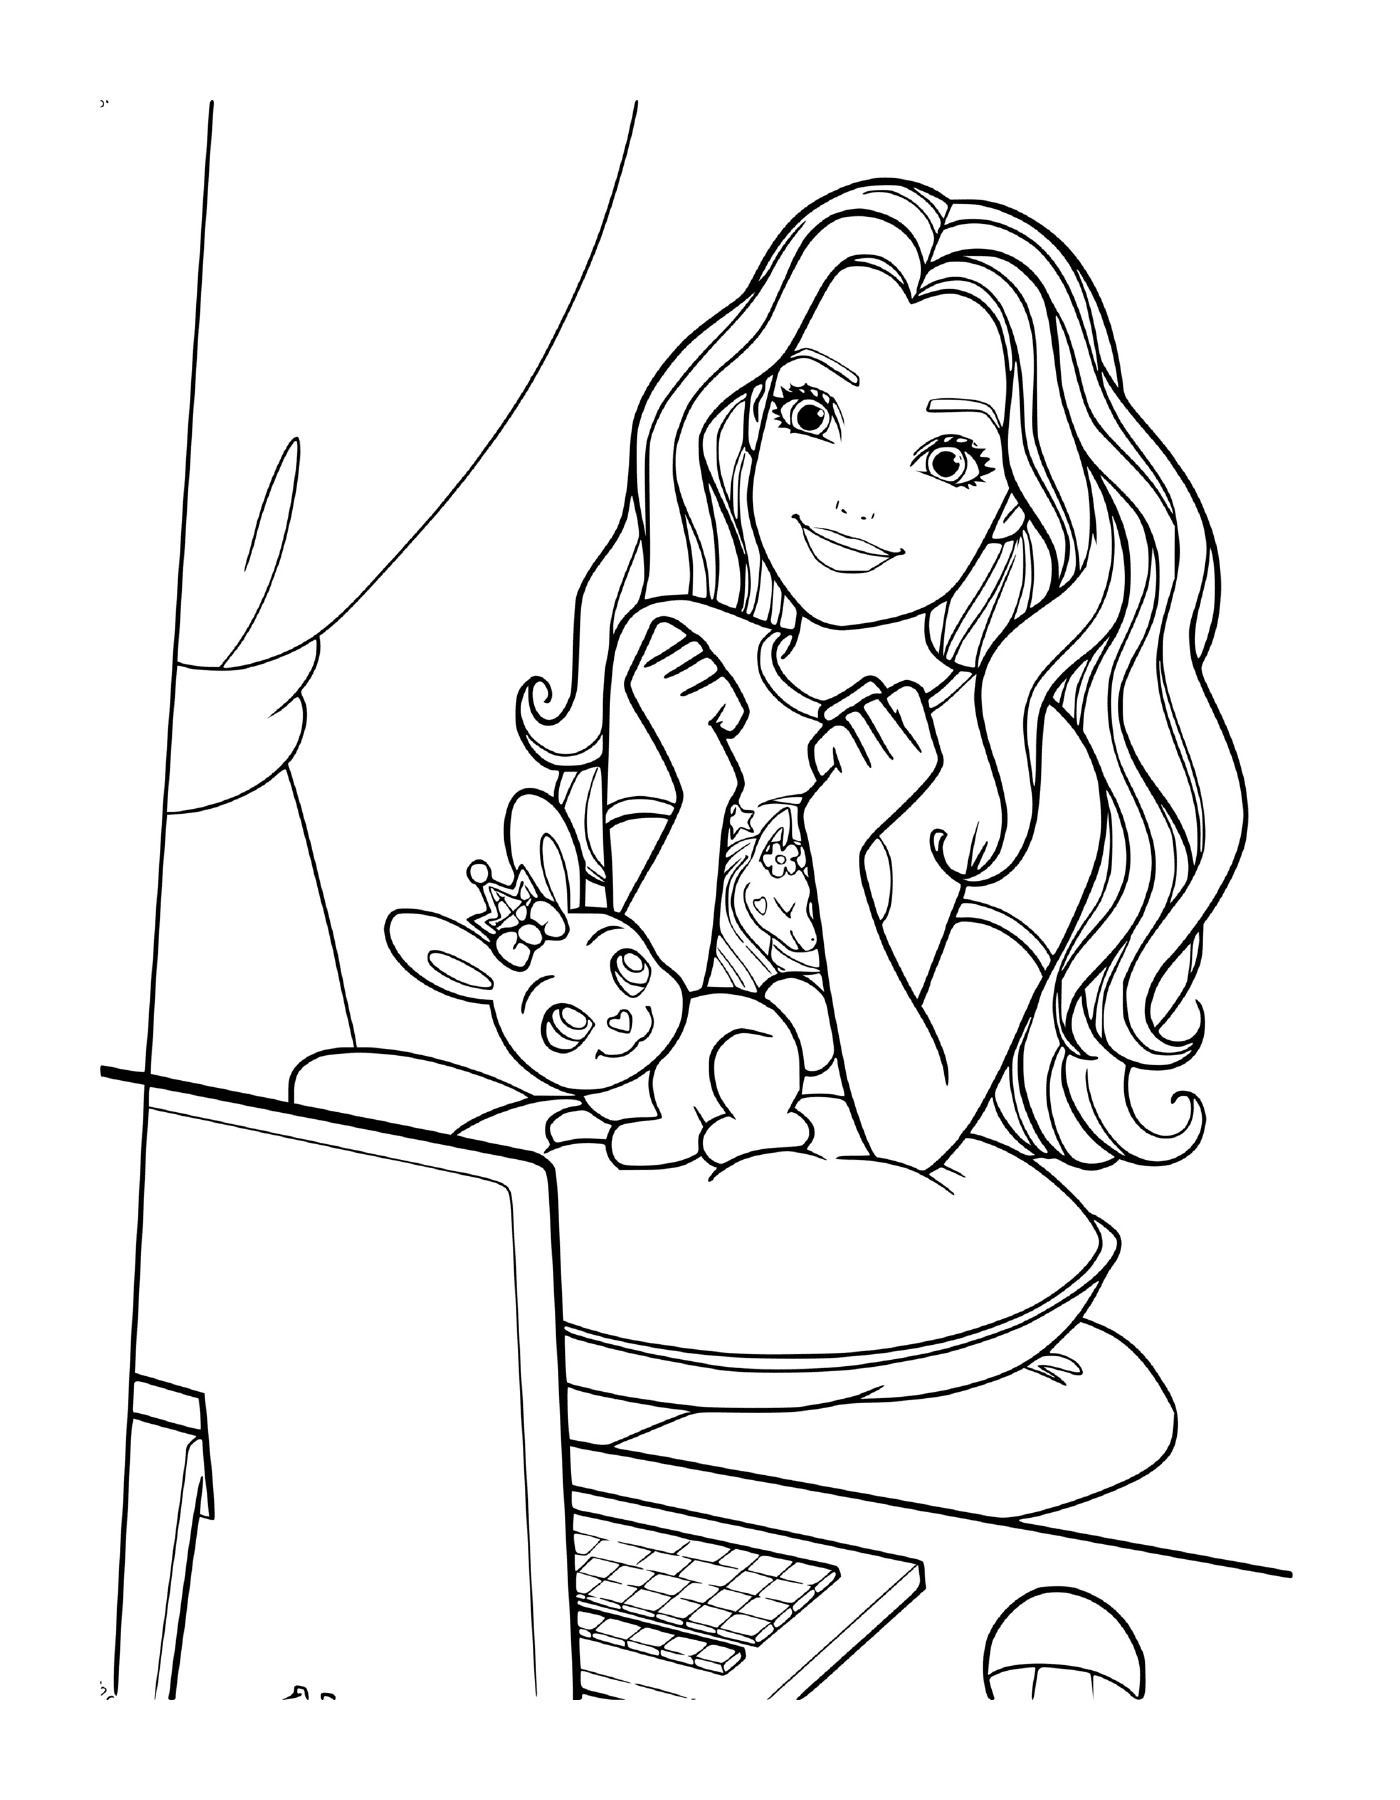  Una giovane ragazza seduta davanti ad un computer 